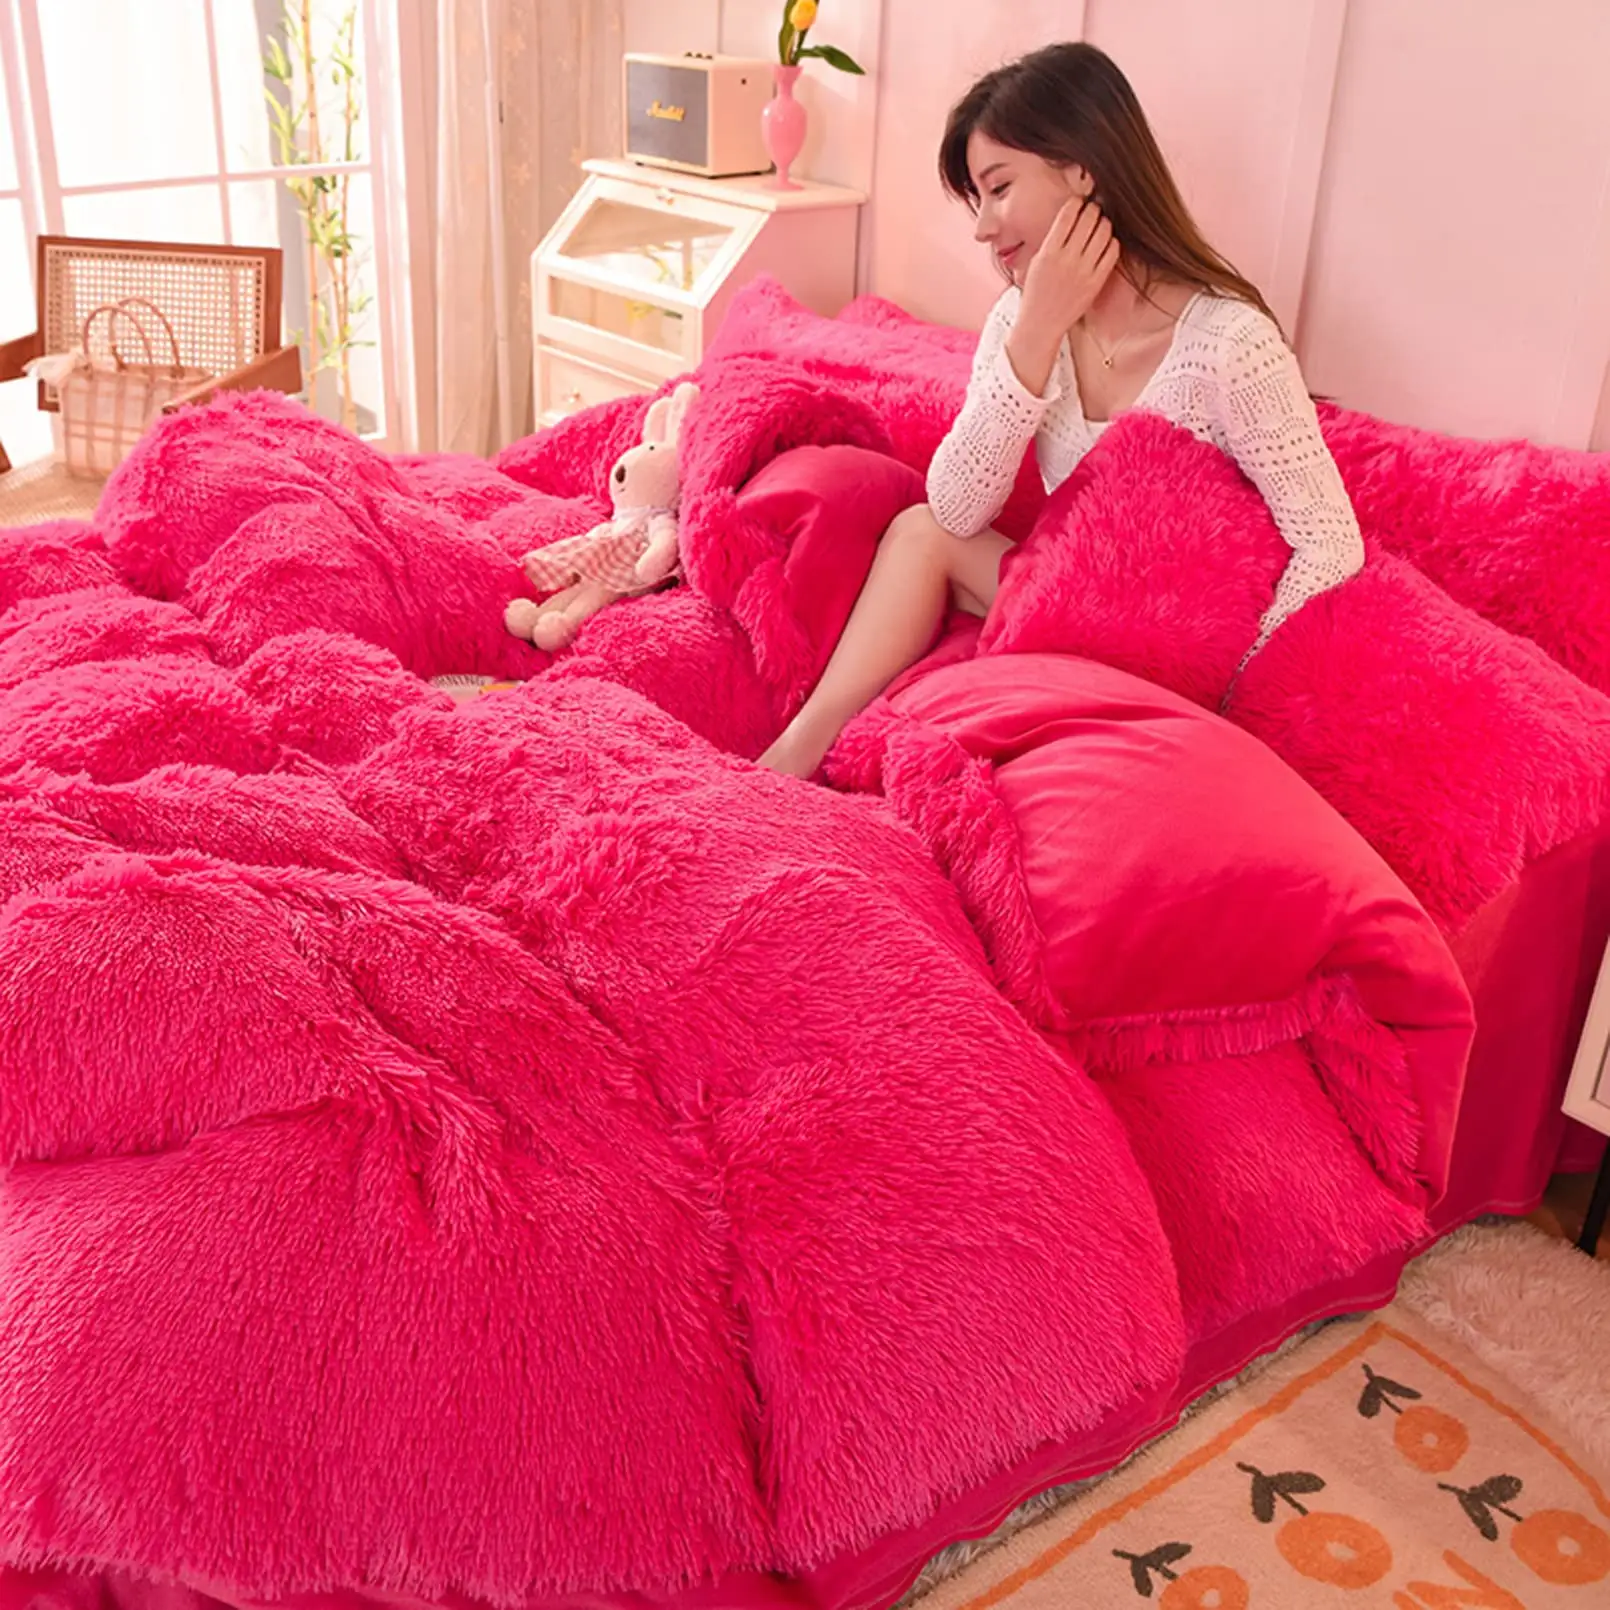 レインボーカラーフェイクファーベルベットふわふわぬいぐるみソフト寝具セット暖かい冬のベッドシーツセット4ピース羽毛布団カバーセット